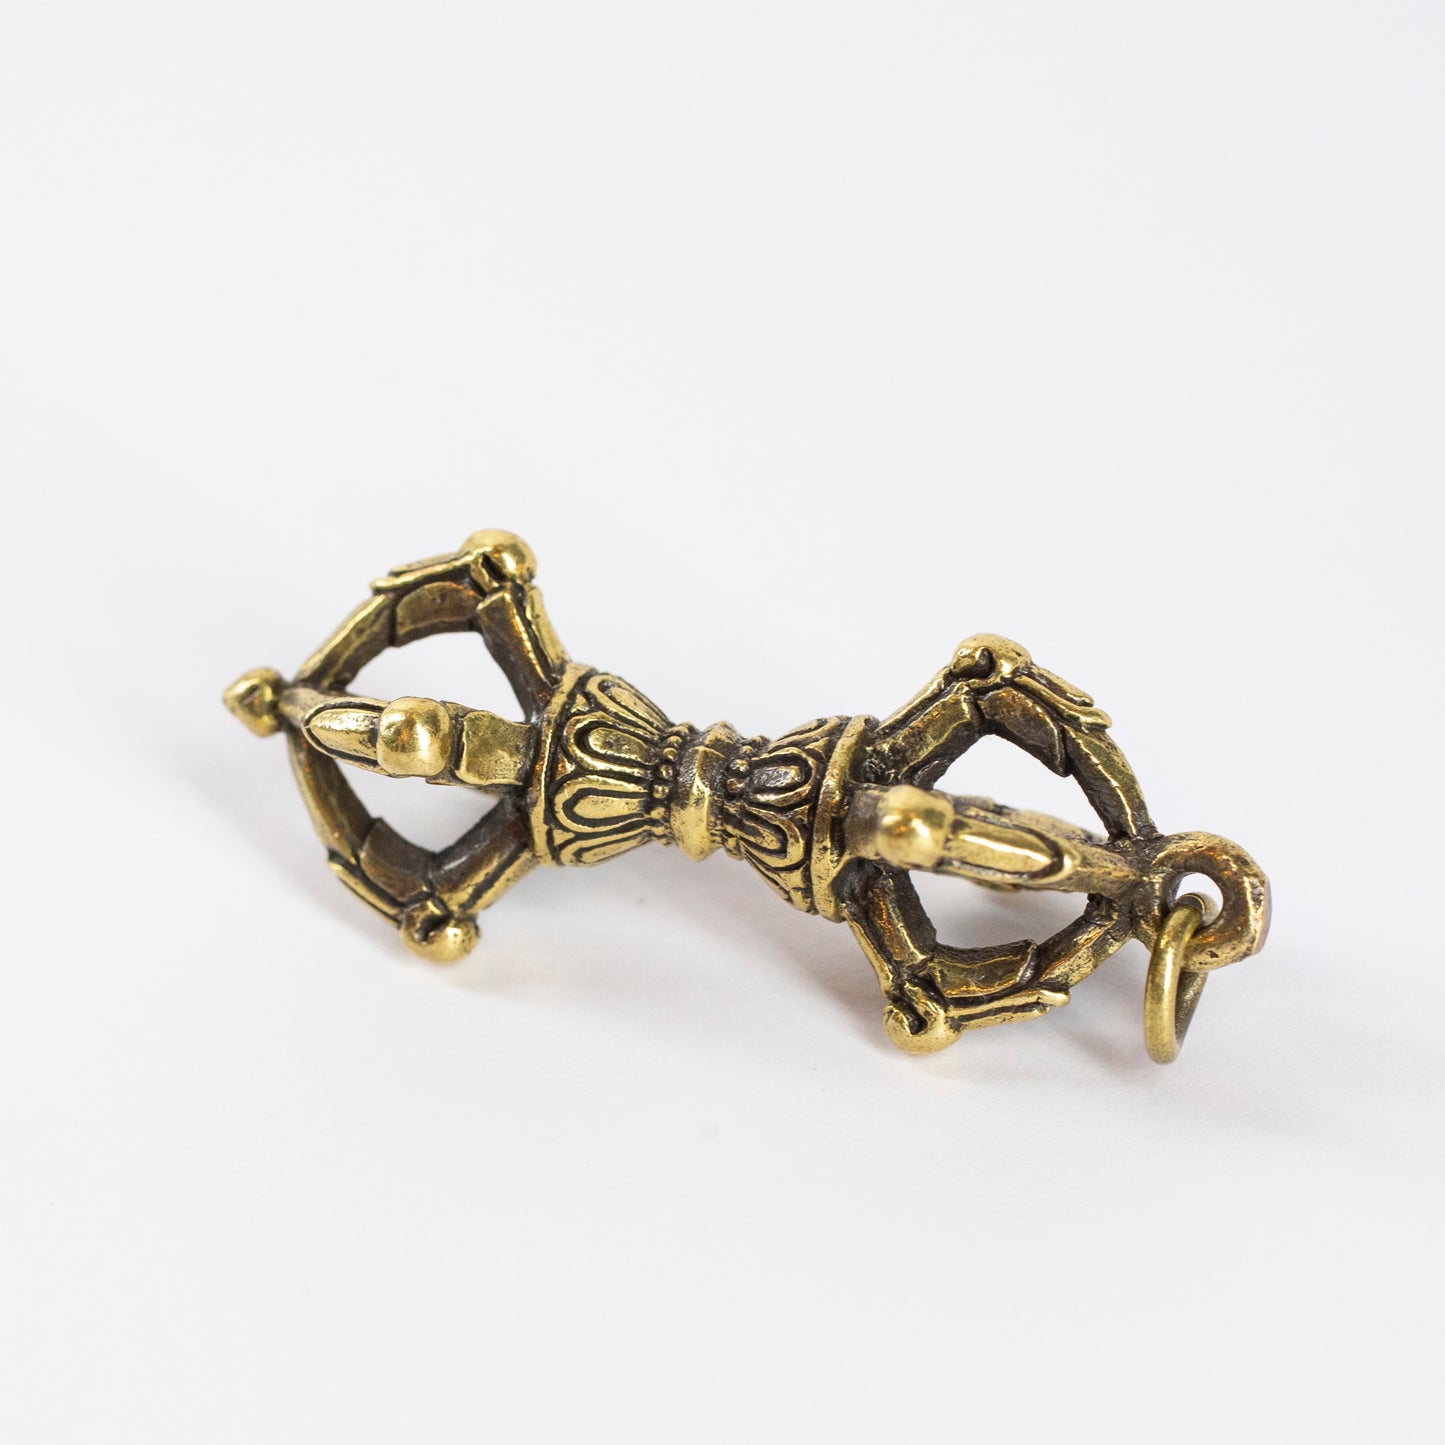 Dorje Vajra *Large* Brass Pendant Necklace